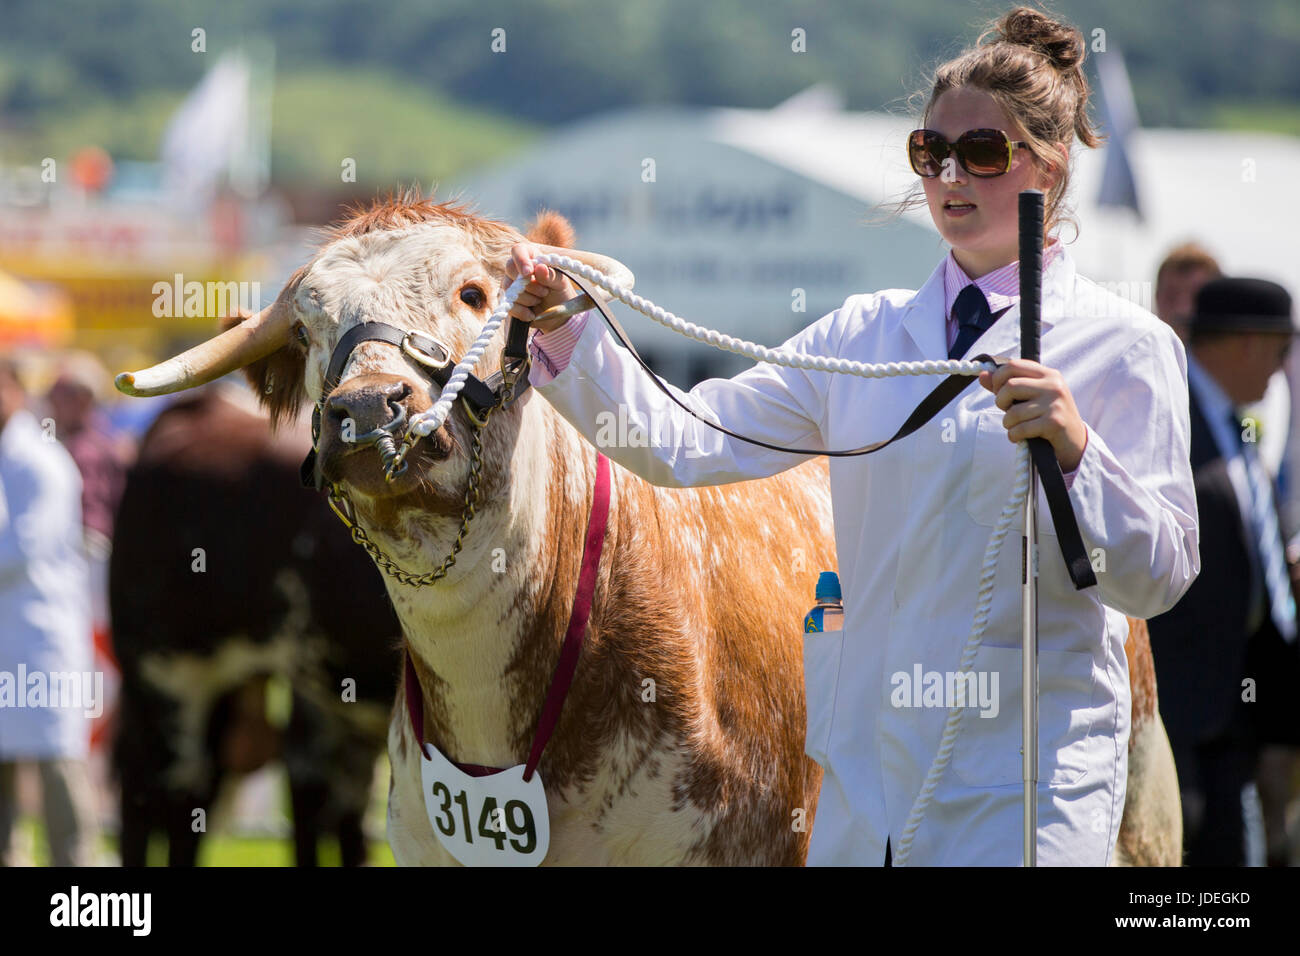 Un toro è esposto durante il Royal Welsh Show 2016 presso il Royal Welsh Showground, Llanelwedd, Builth Wells, Powys, Wales, Regno Unito, 19 luglio 2016. Foto Stock